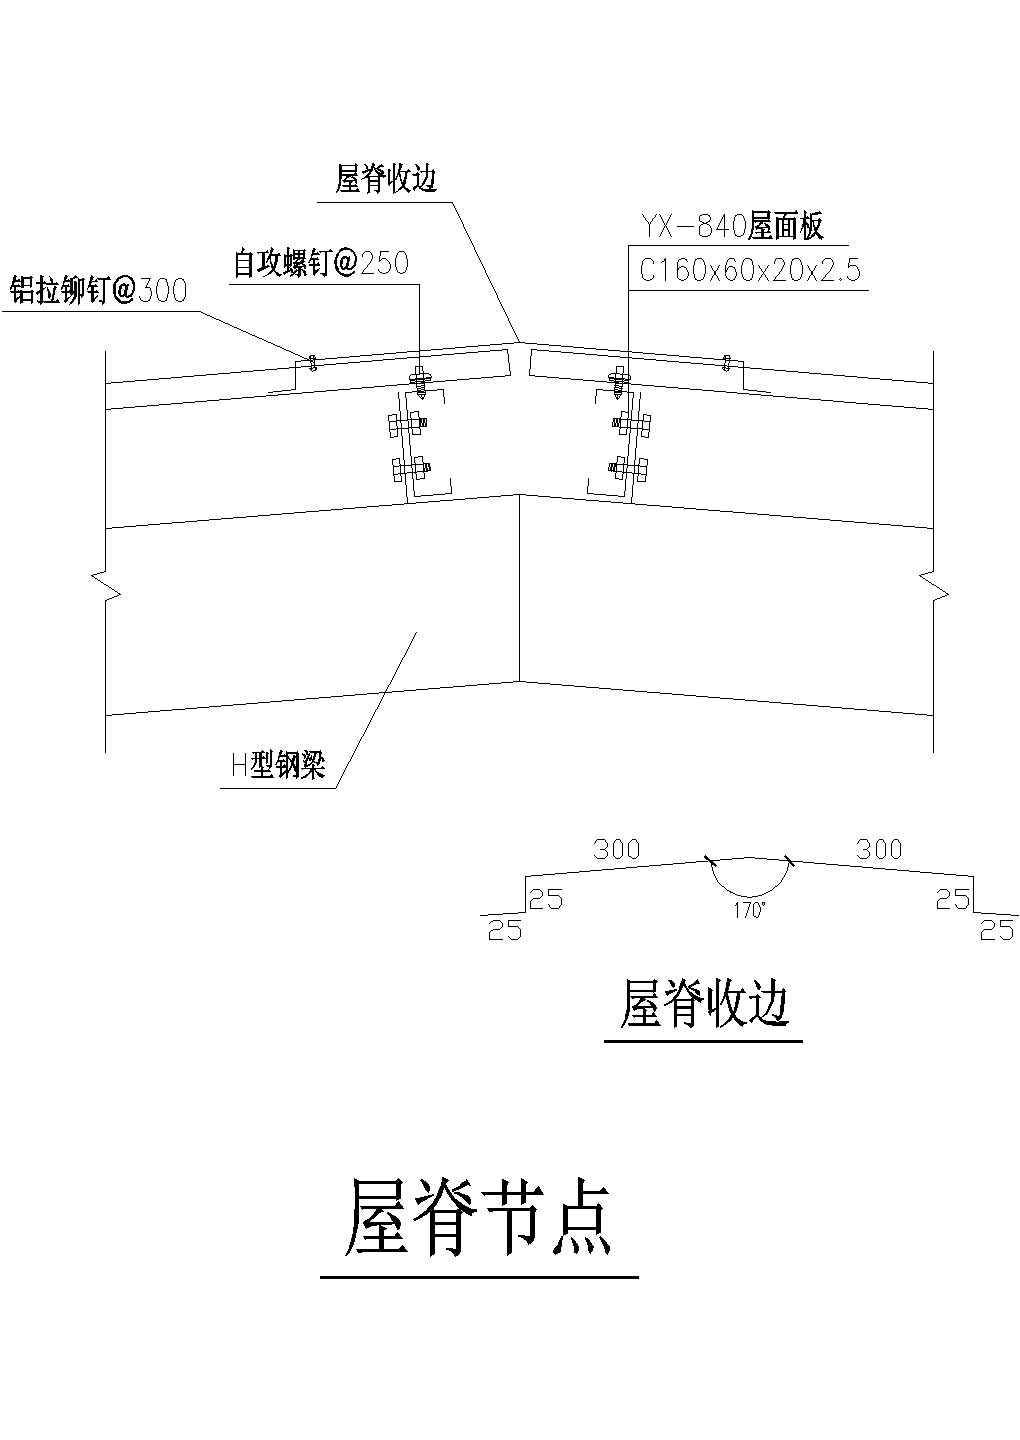 厂房设计_上海徐汇区某电子厂钢结构厂房屋脊节点设计CAD施工图